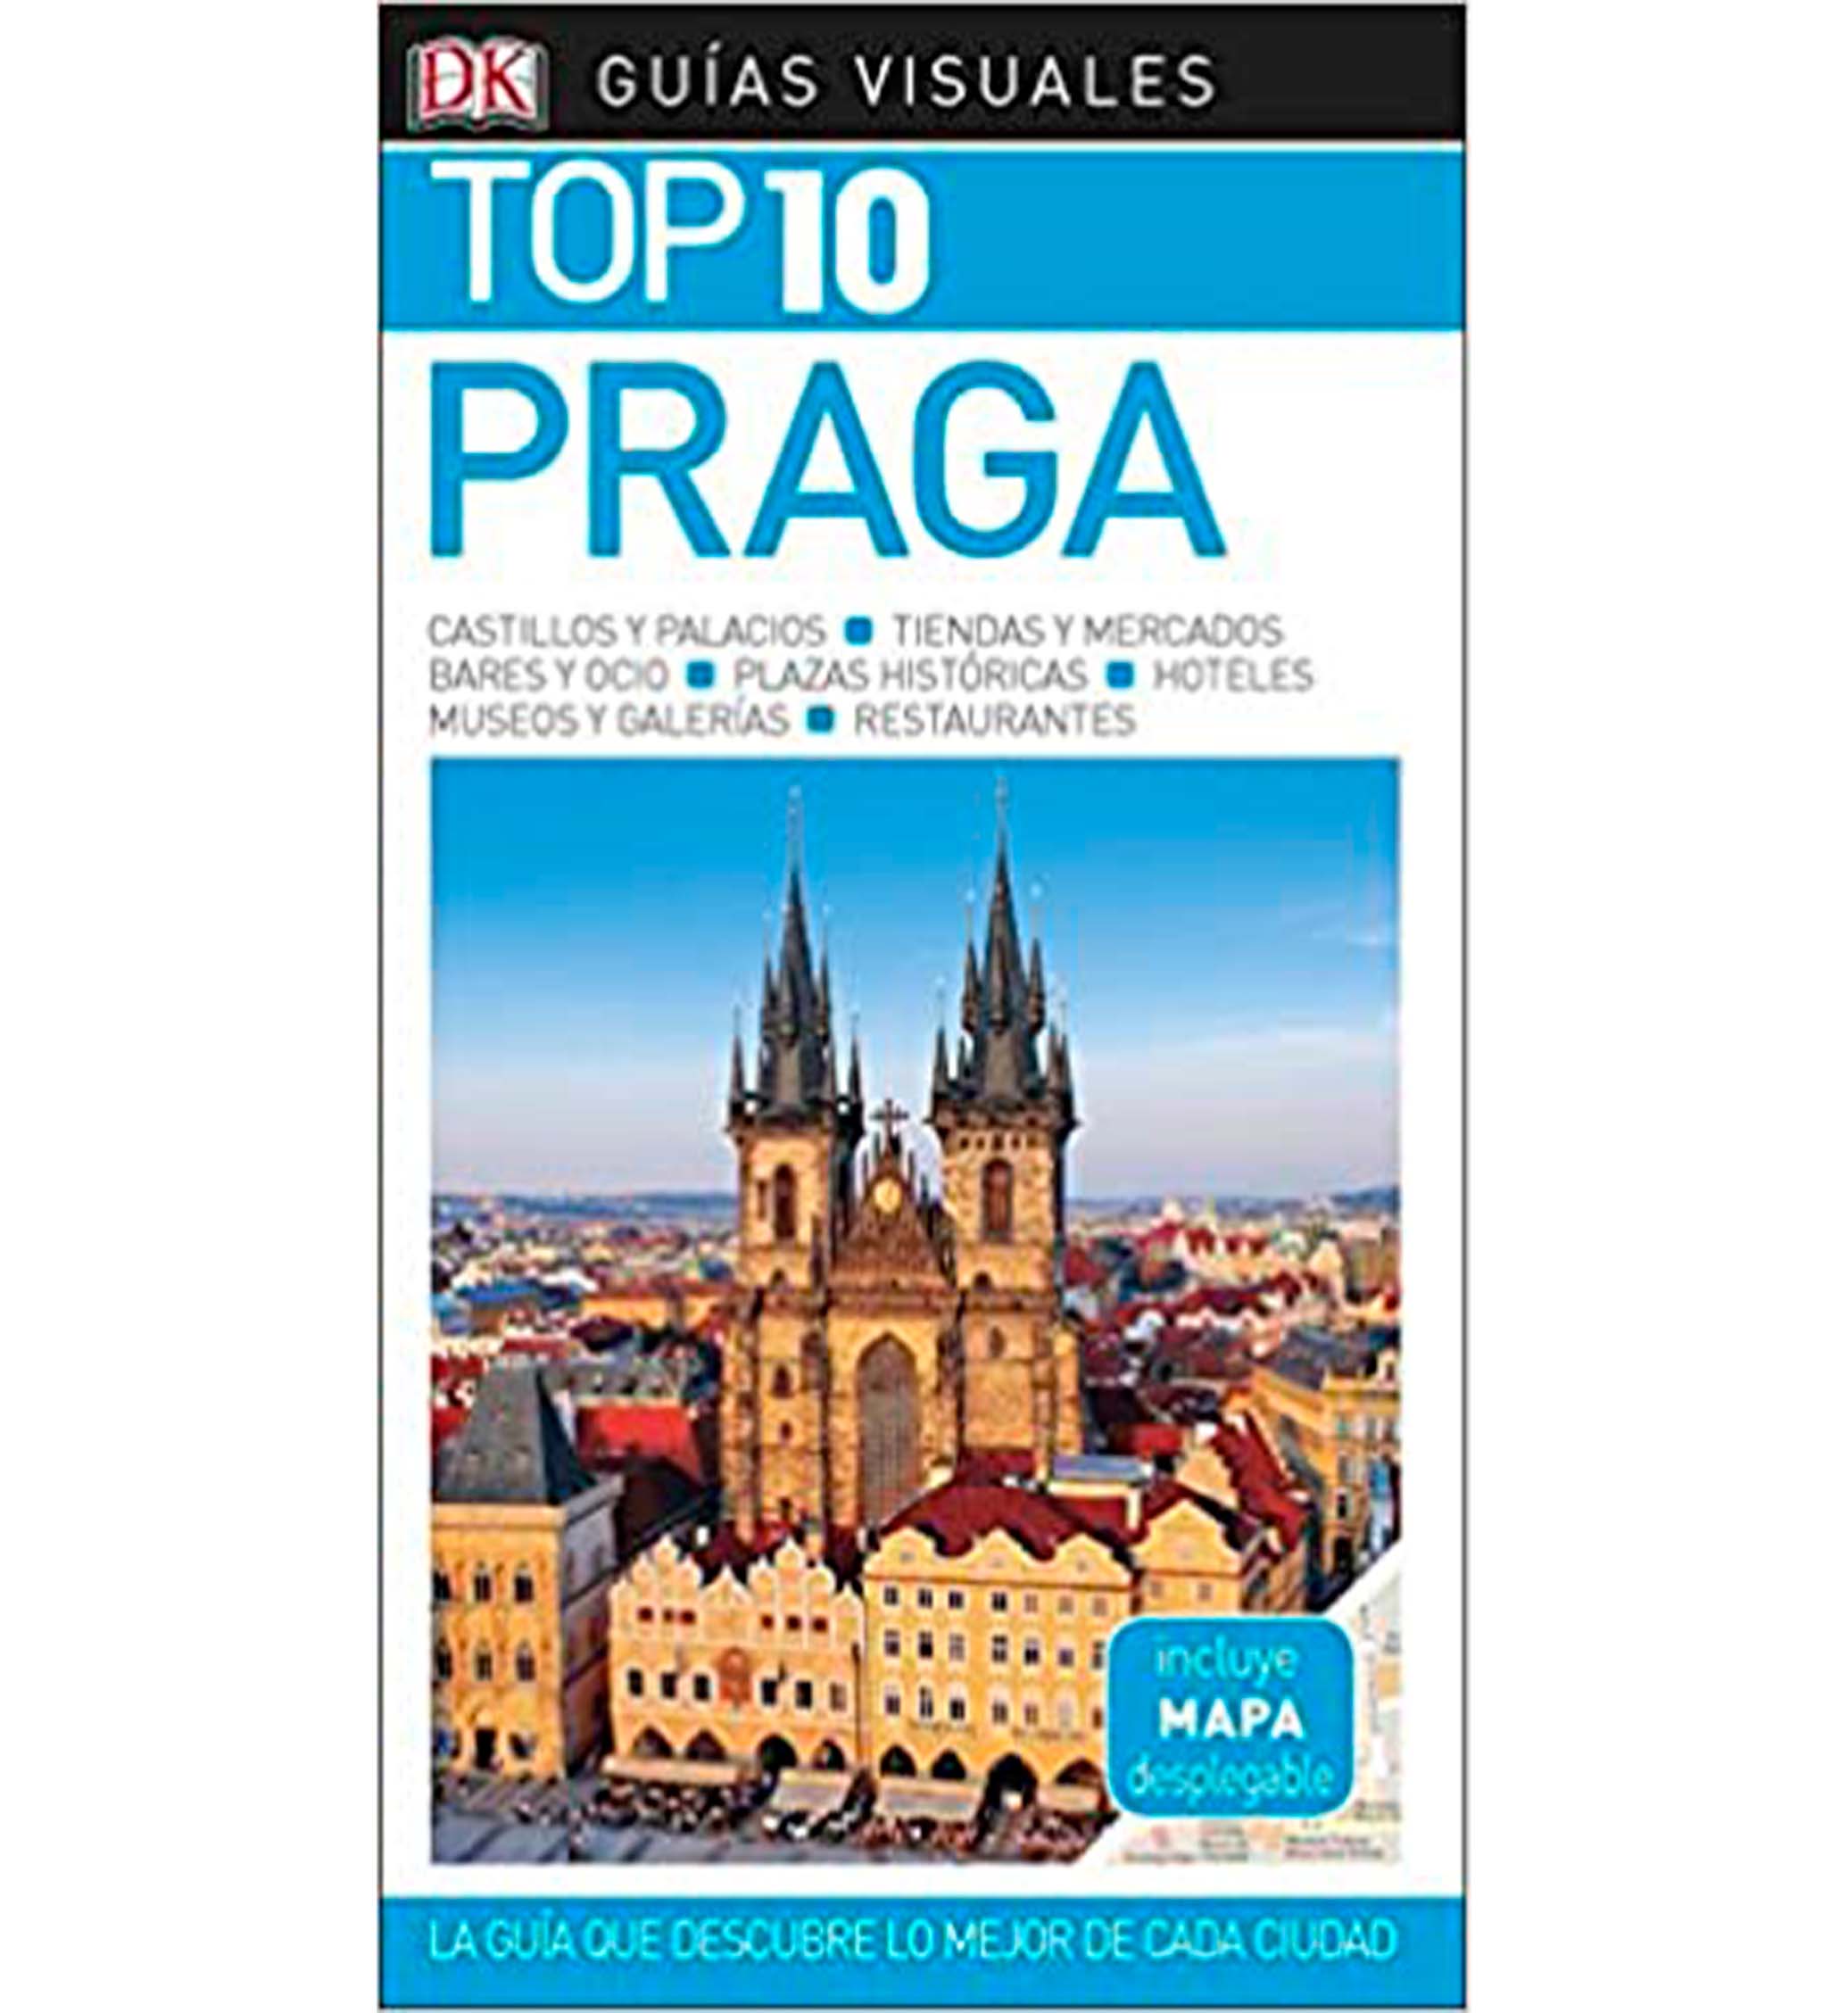 TOP 10 PRAGA